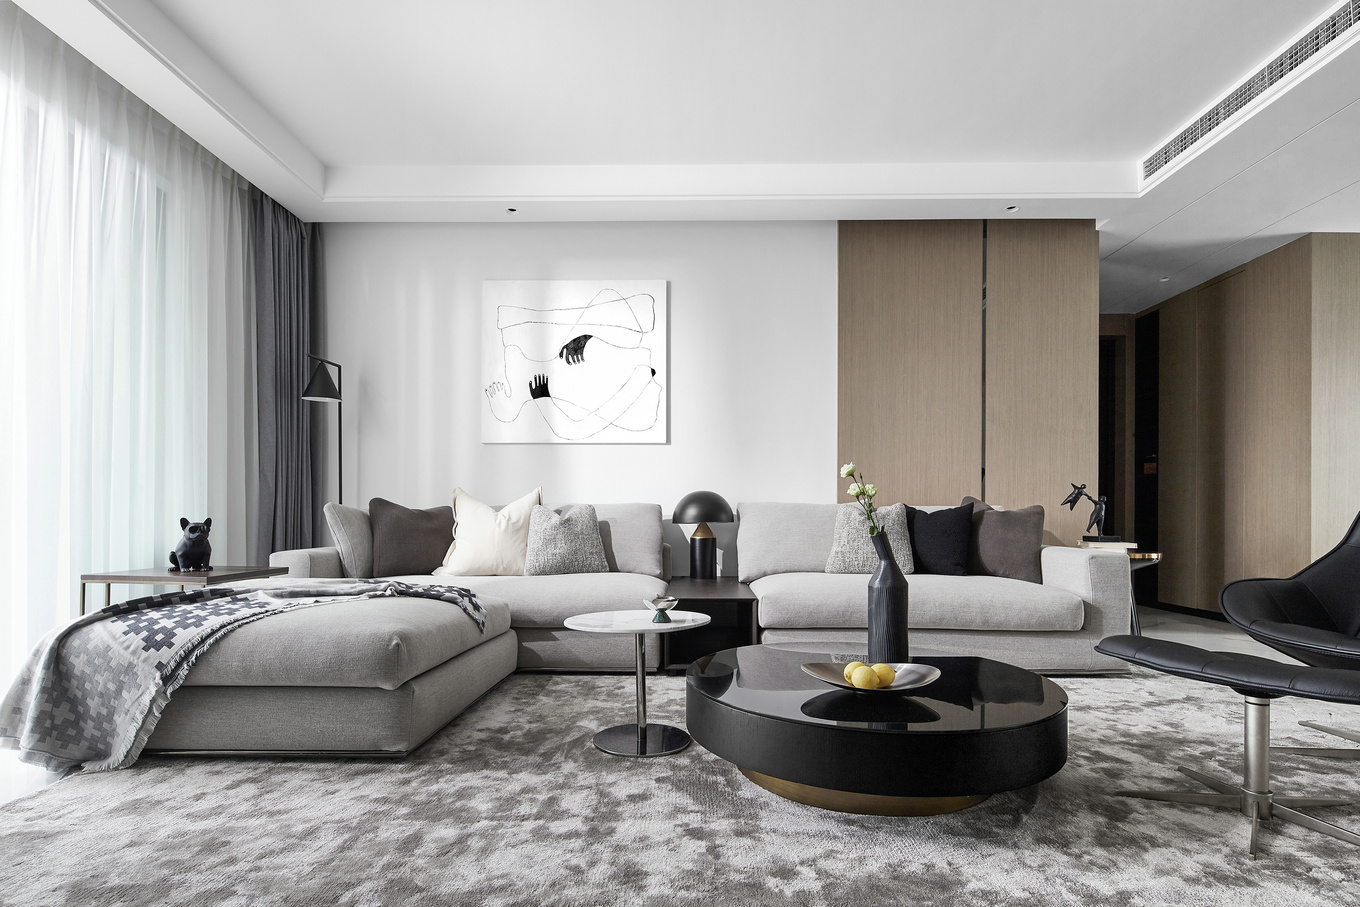 高级灰布艺沙发搭配绒面地毯，加一黑色沙发椅，绽放高品质生活；白色墙漆+木板拼接的背景墙，丰富有质感